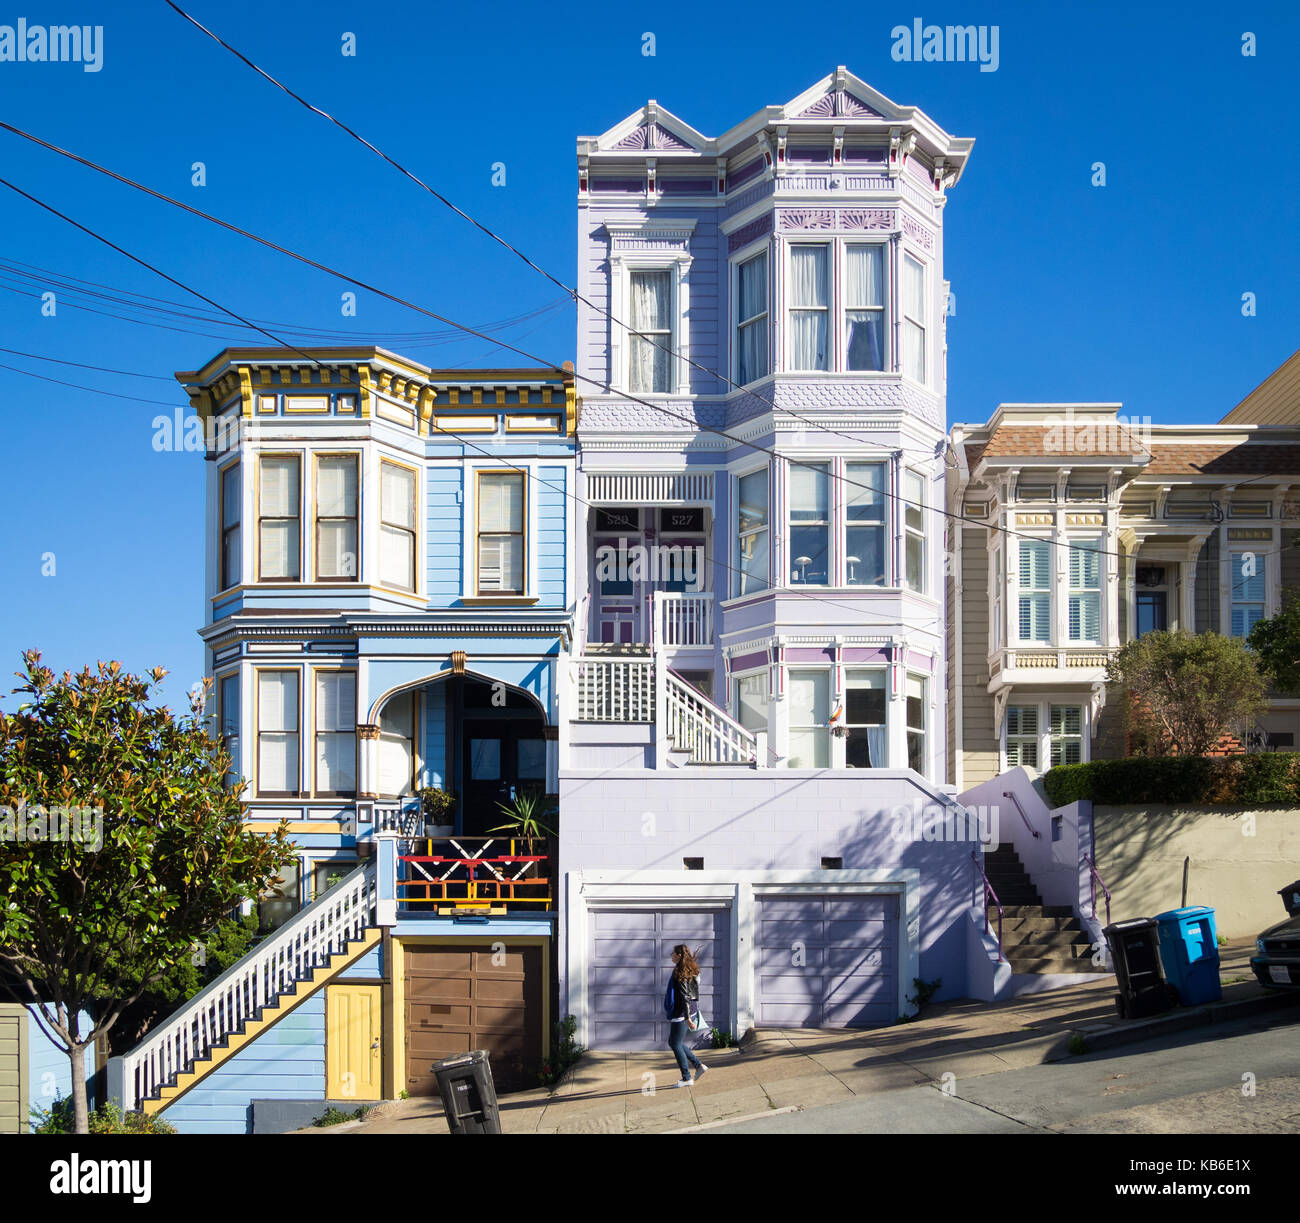 Una ragazza cammina giù Sanchez Street (nota architettura Victorian-Italianate) nel quartiere Castro / Noe Valley del Distretto di San Francisco, California. Foto Stock